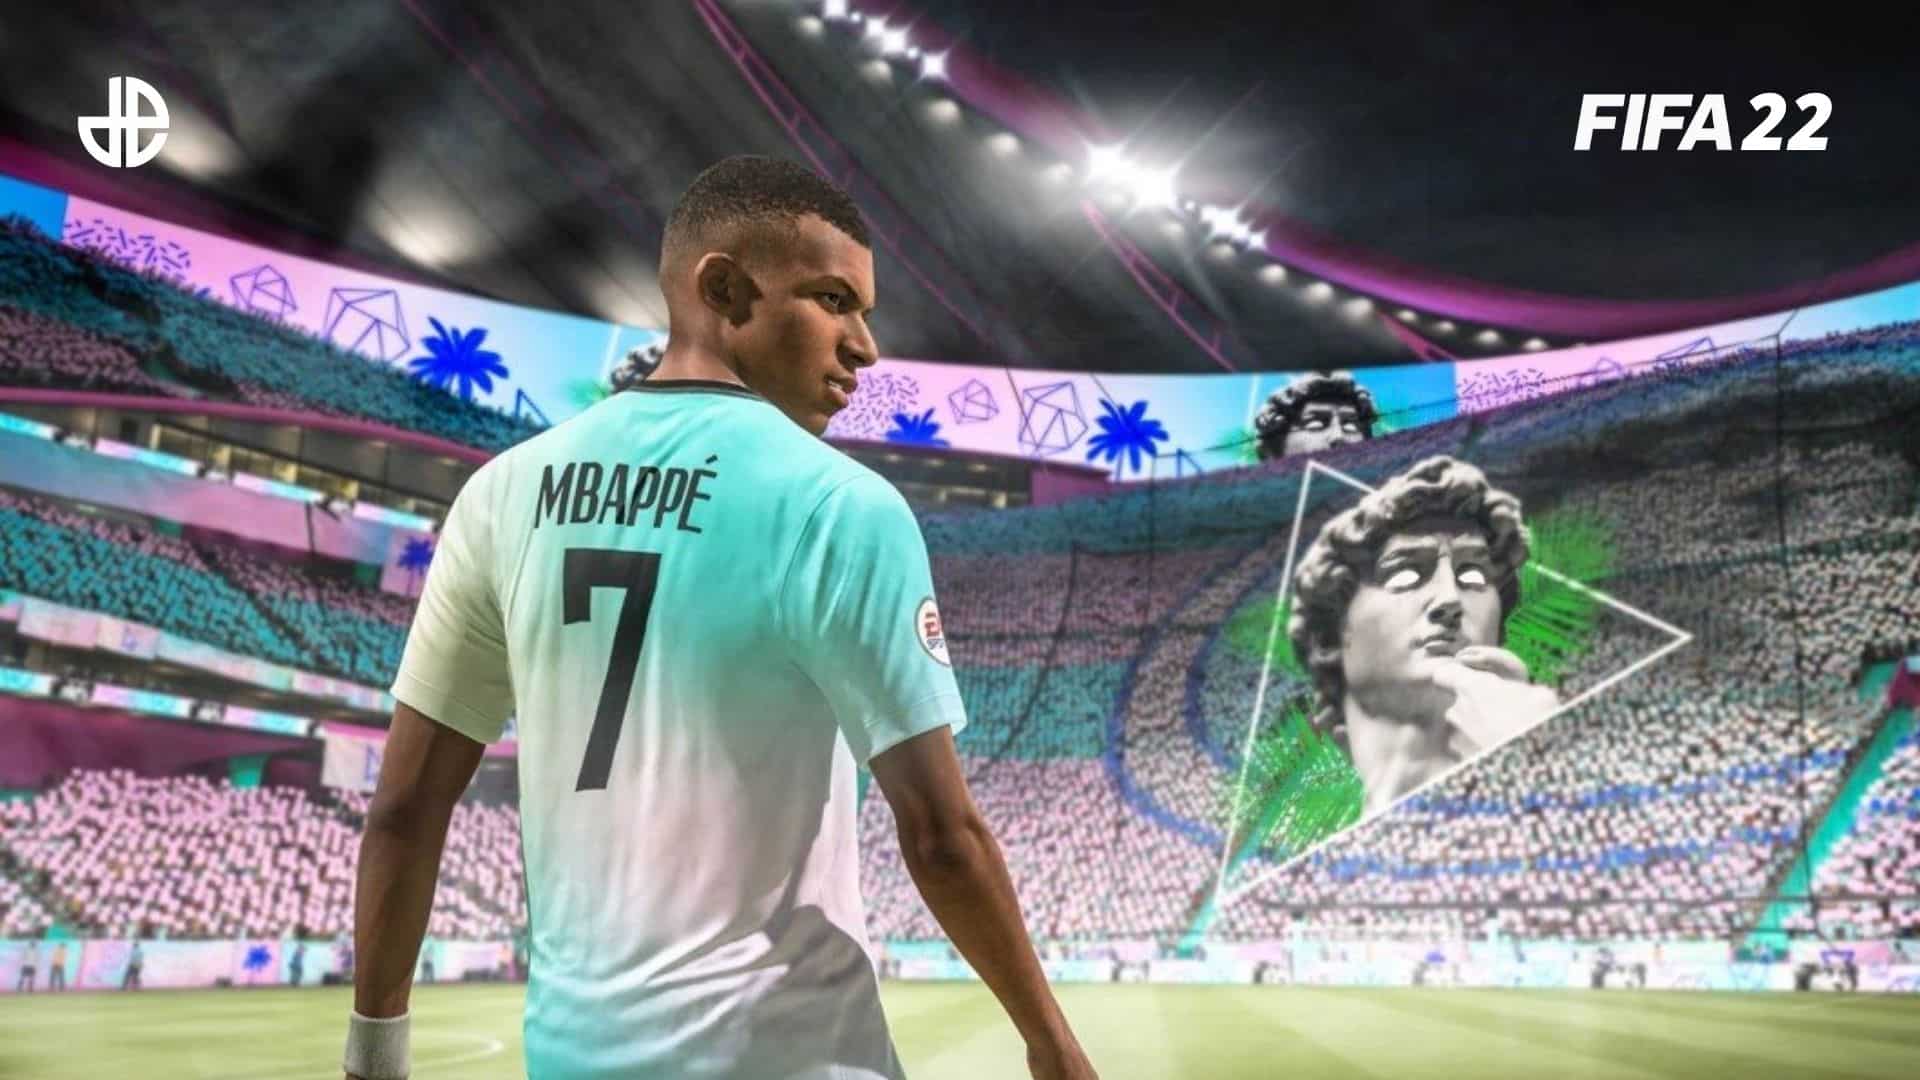 Mbappe in FIFA 22 ultimate team stadium